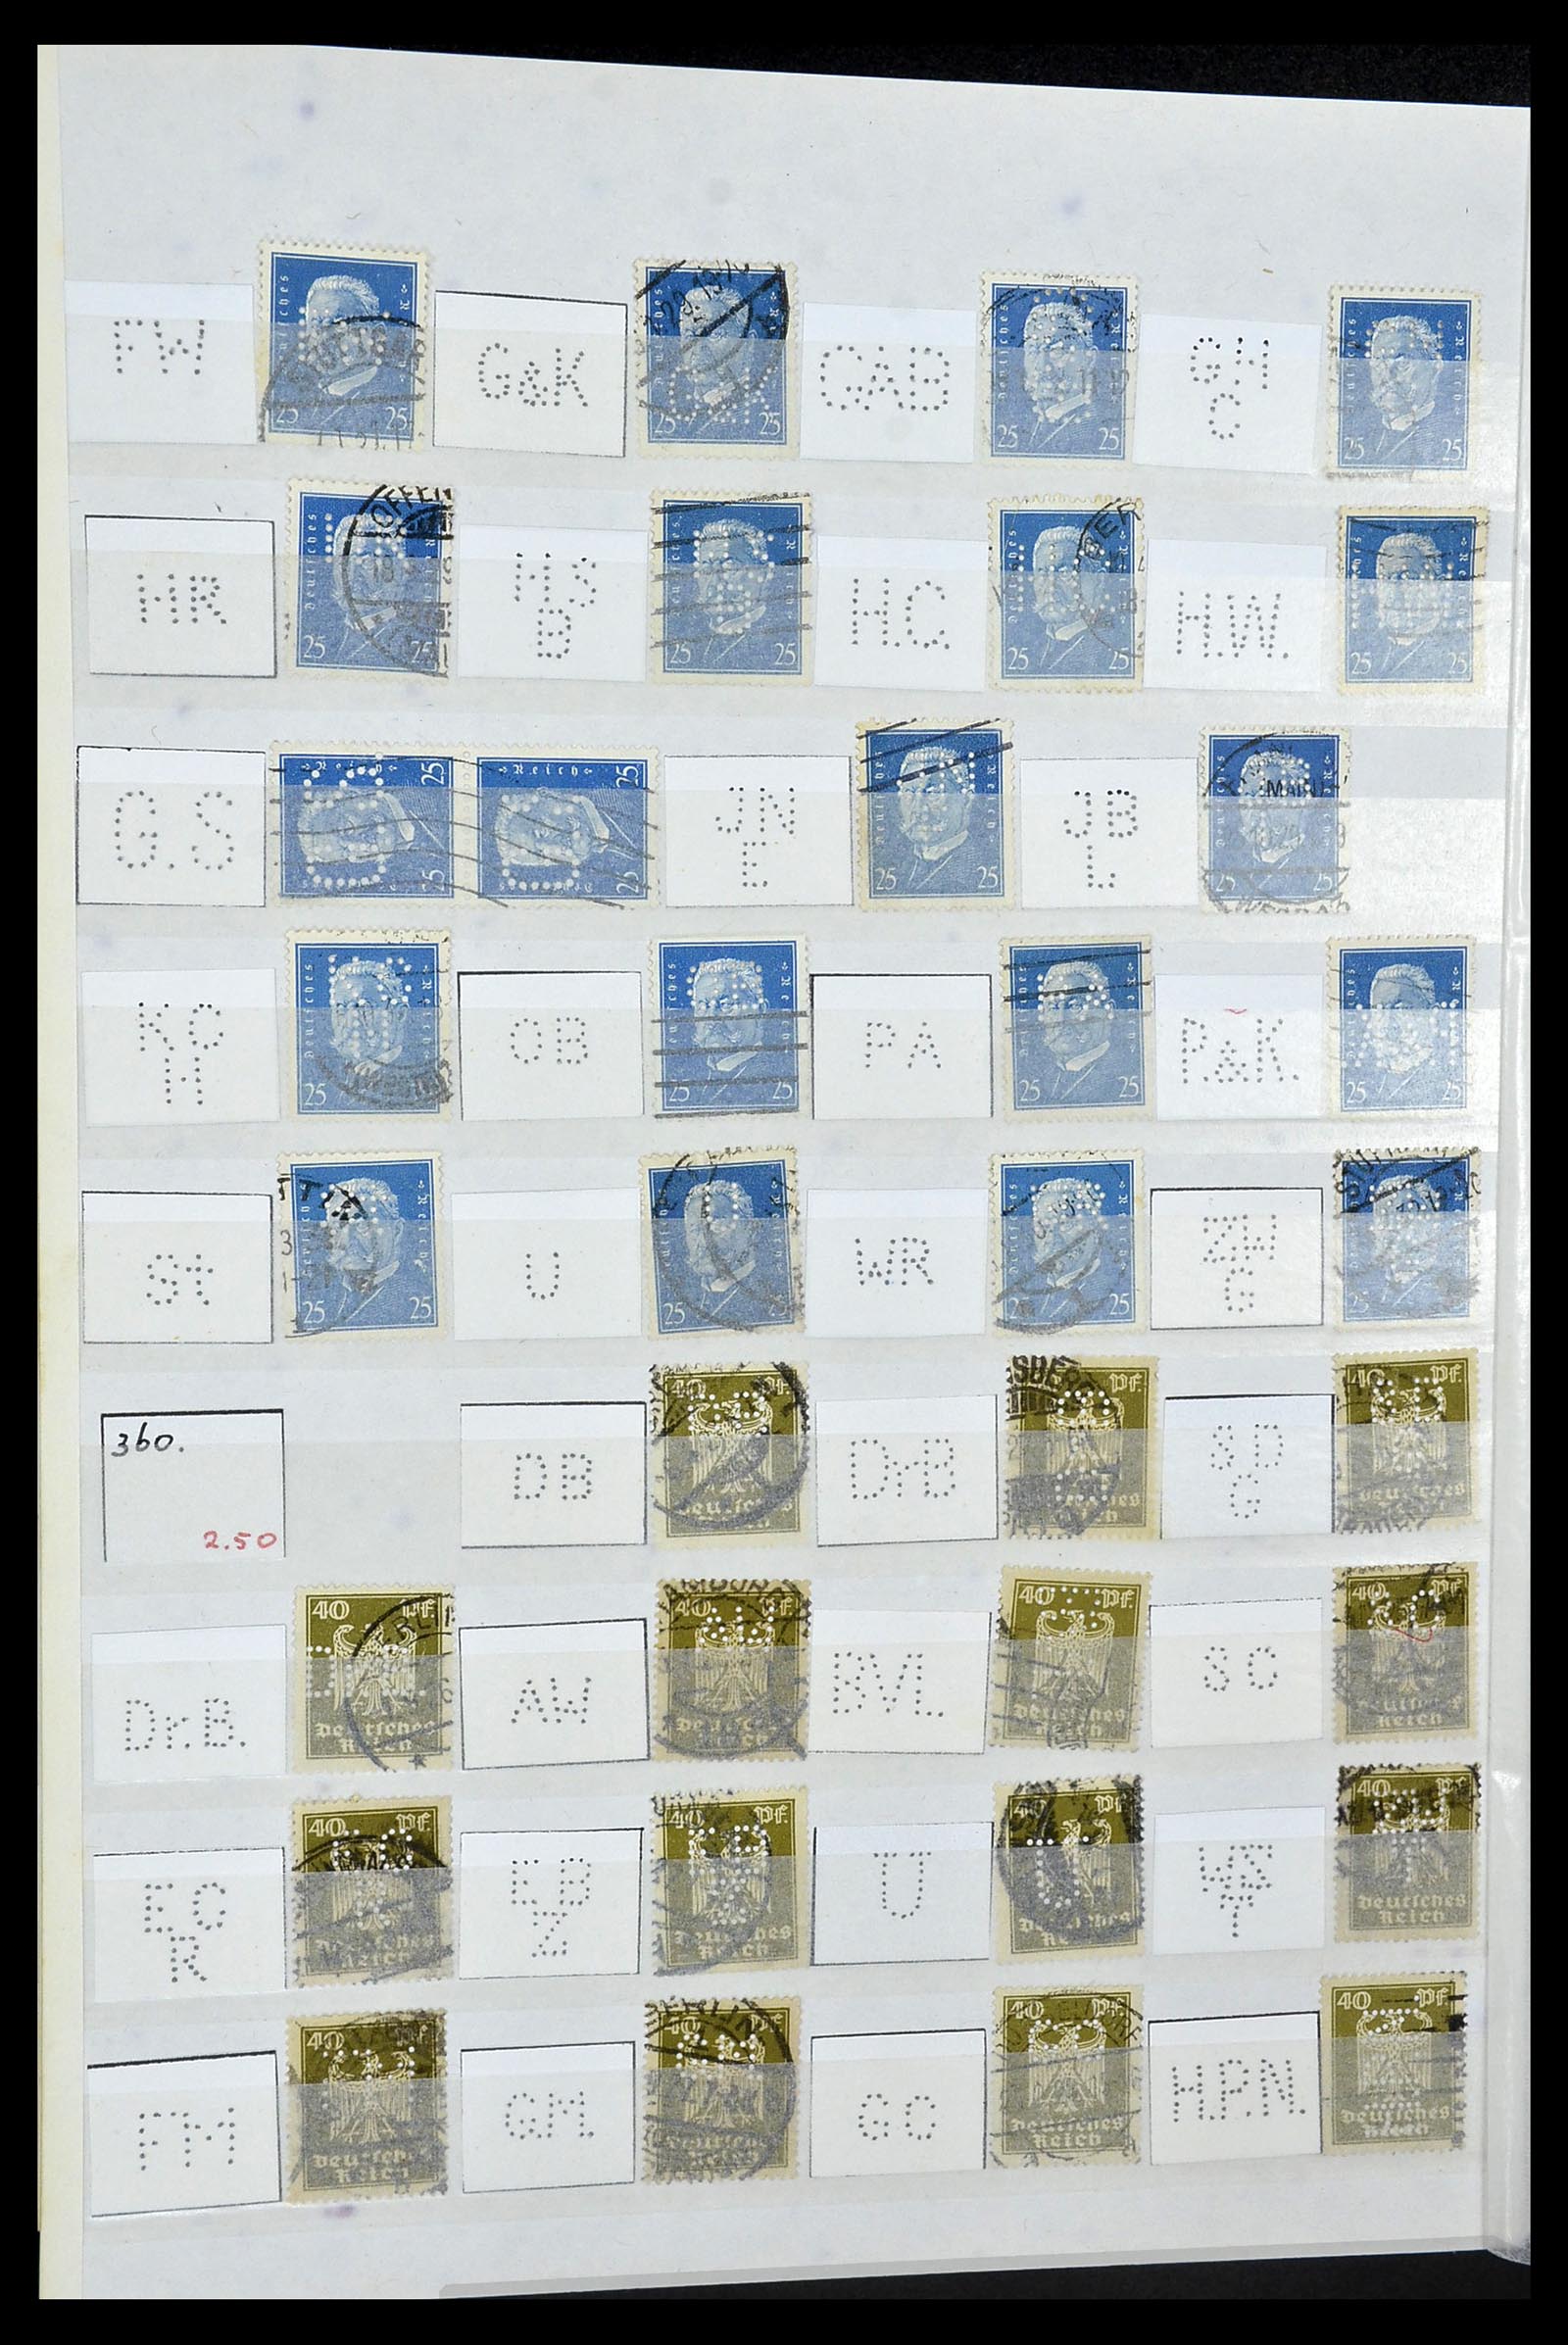 34071 038 - Stamp collection 34071 German Reich perfins 1923-1930.